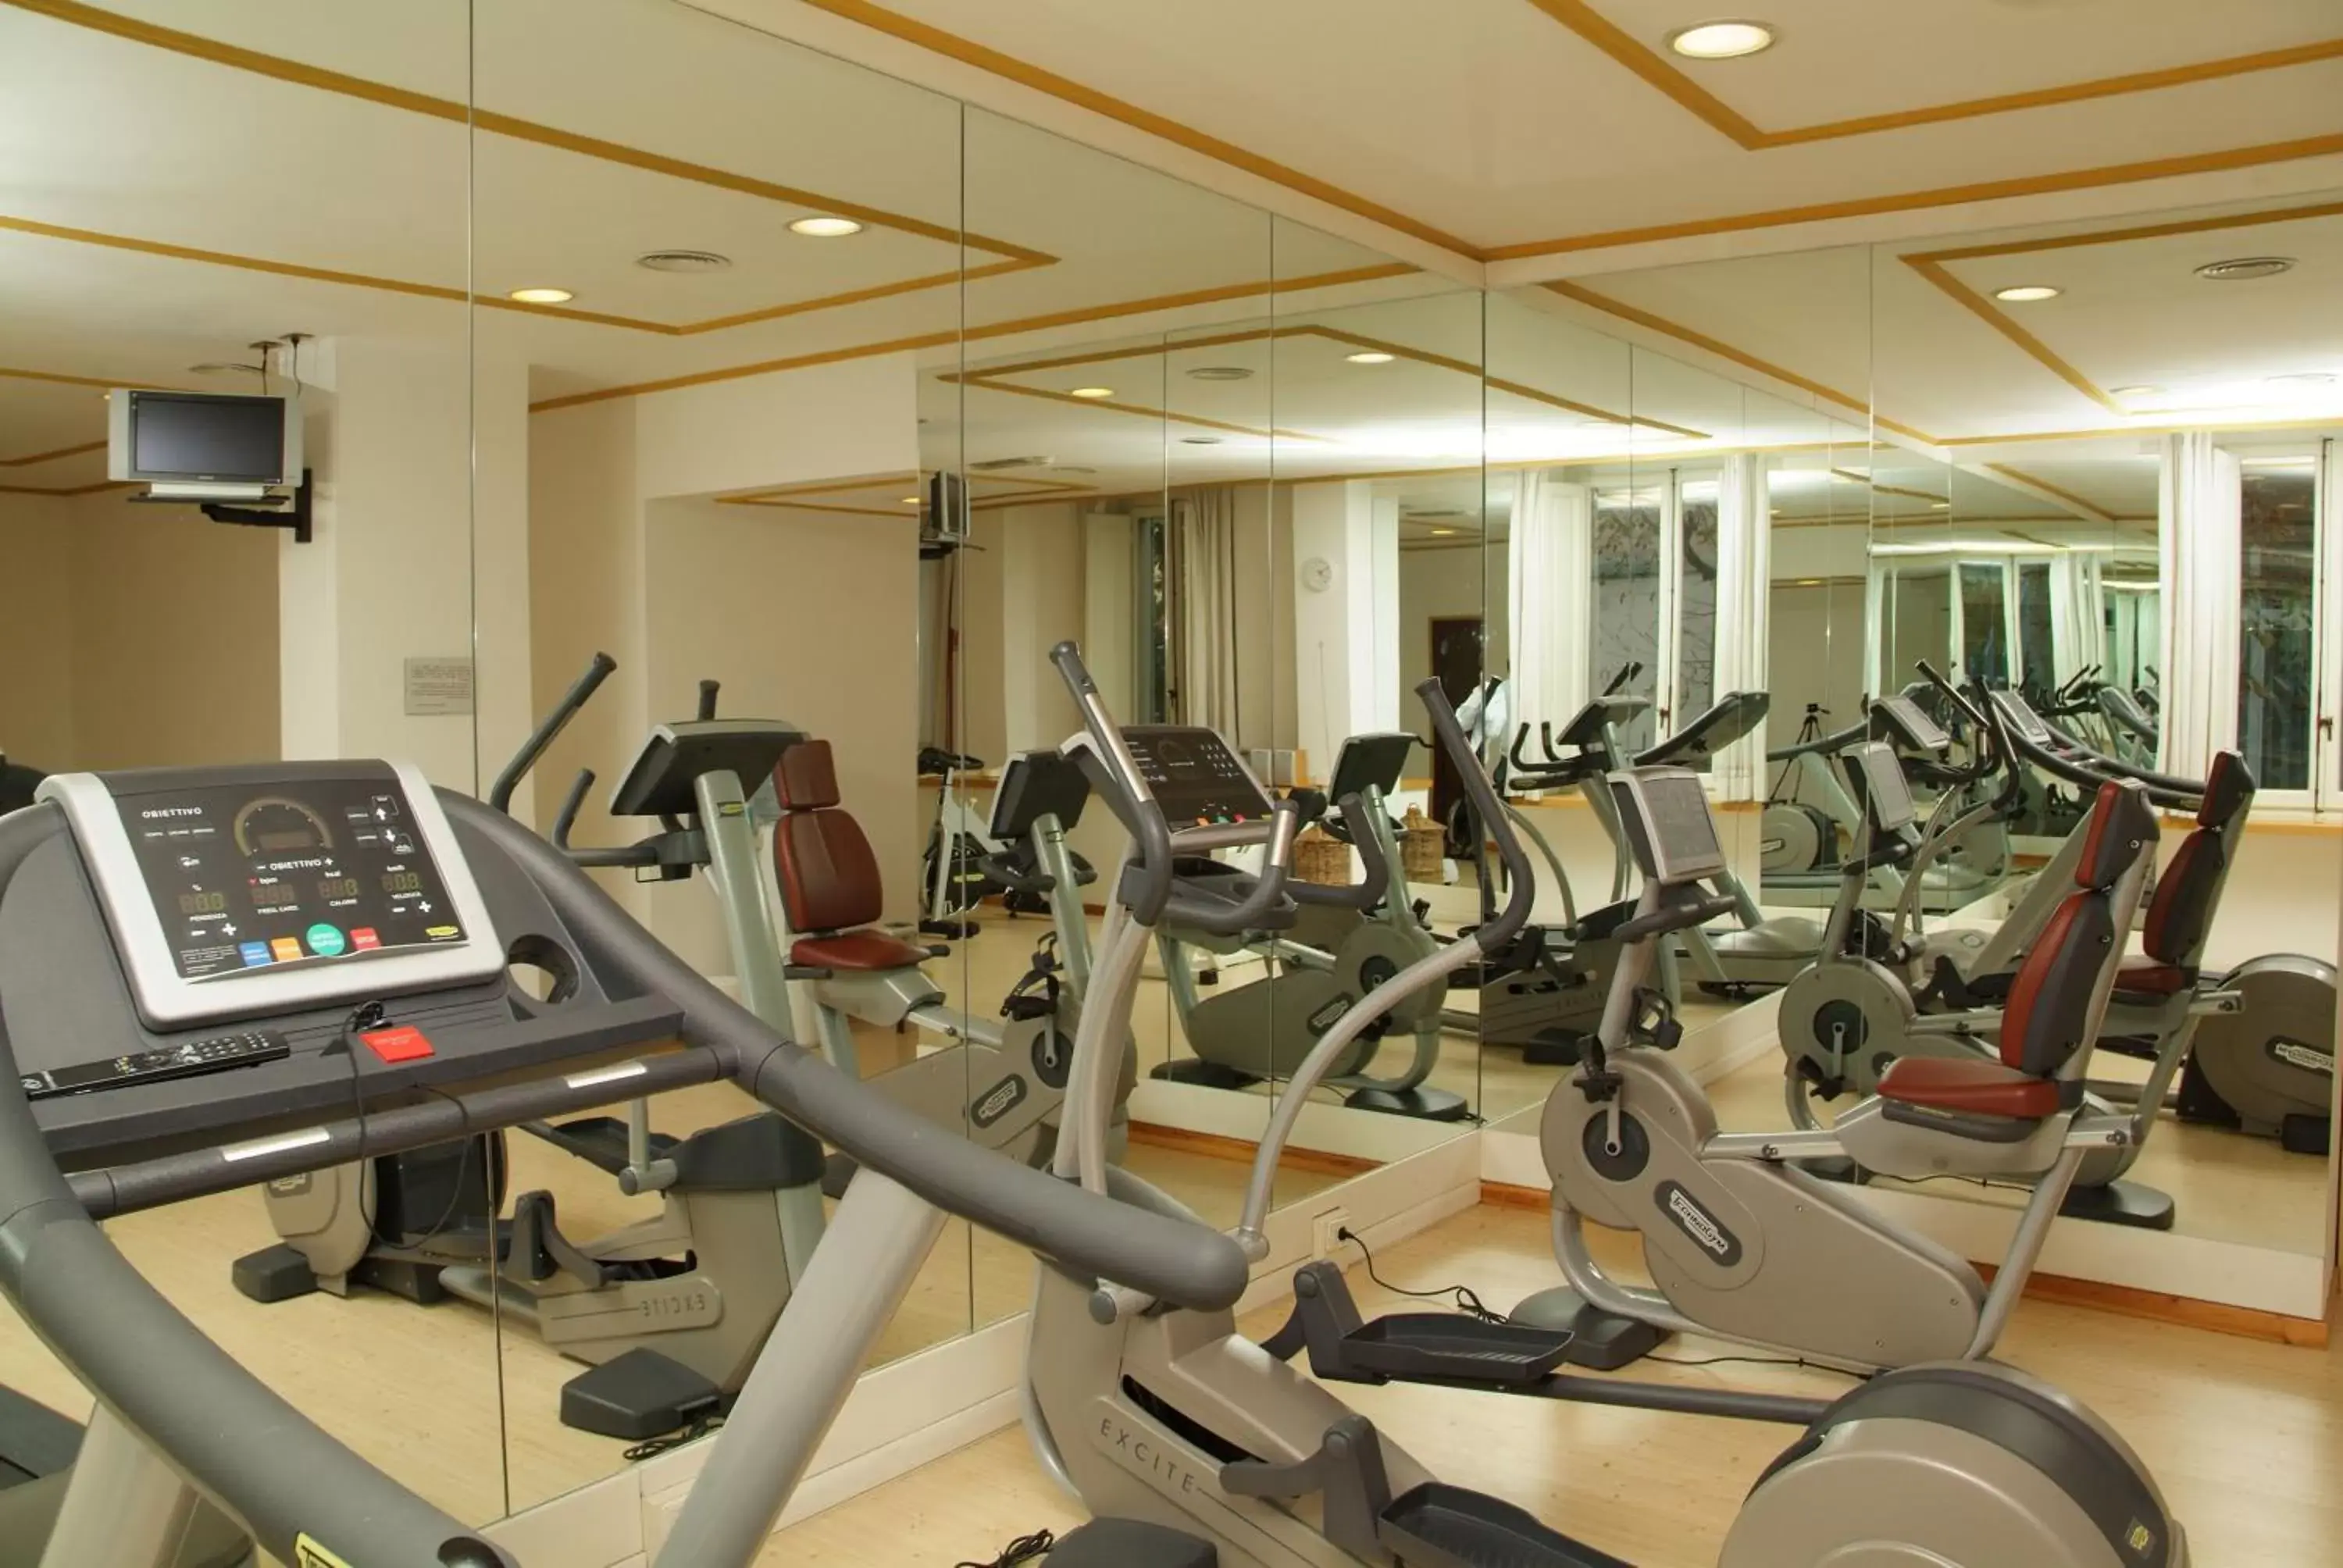 Fitness centre/facilities, Fitness Center/Facilities in Grand Hotel Croce Di Malta